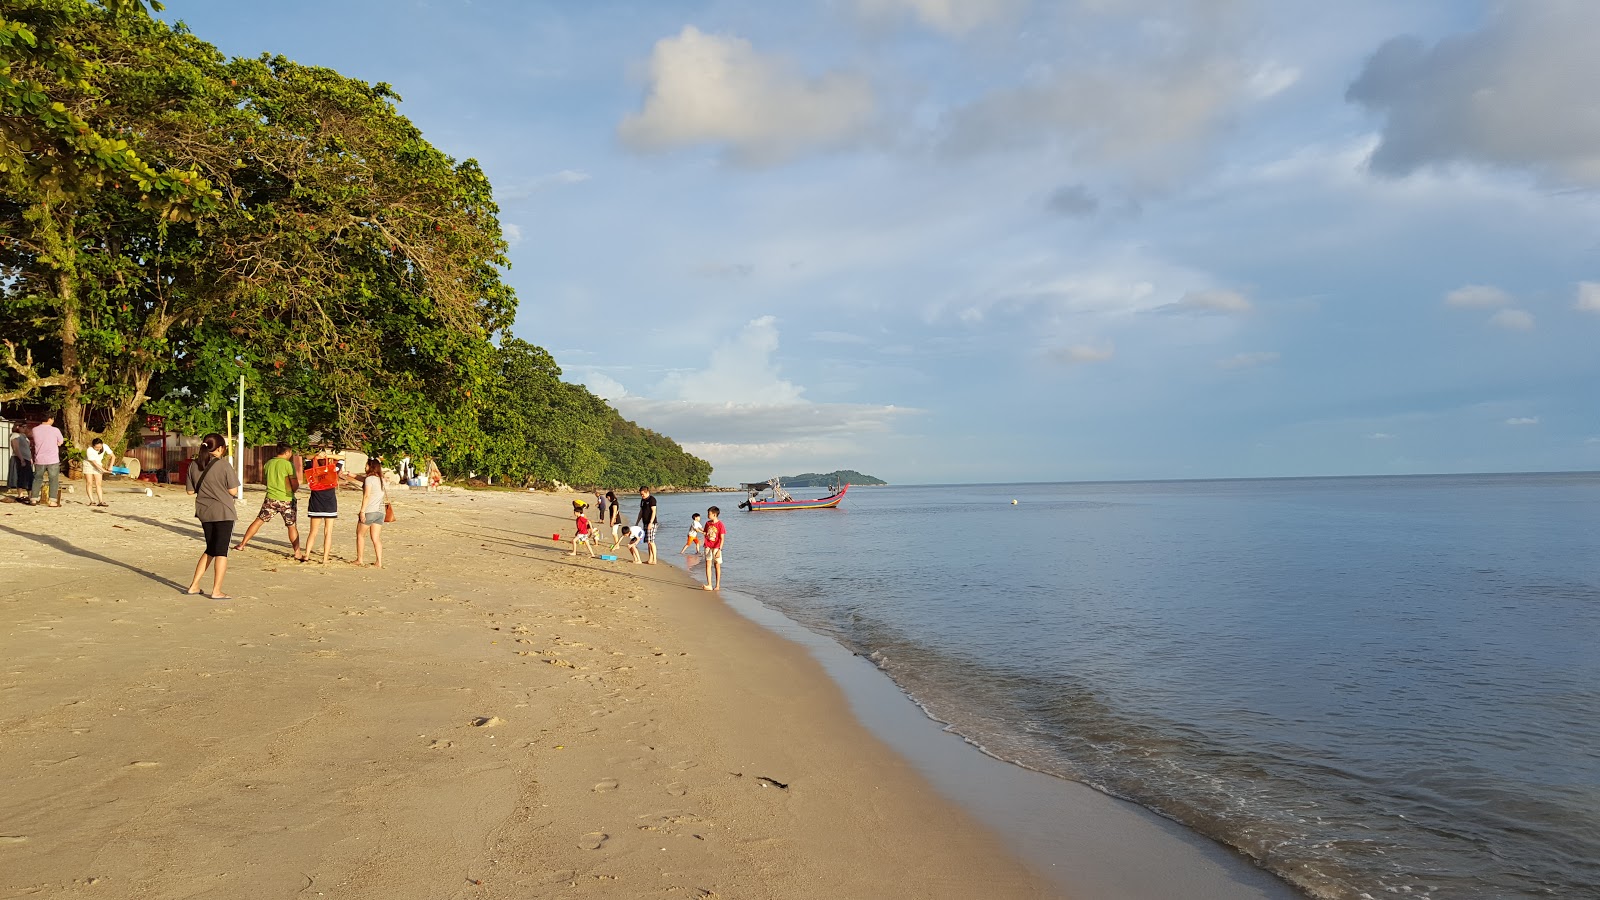 Photo de Ombak Damai Beach - endroit populaire parmi les connaisseurs de la détente